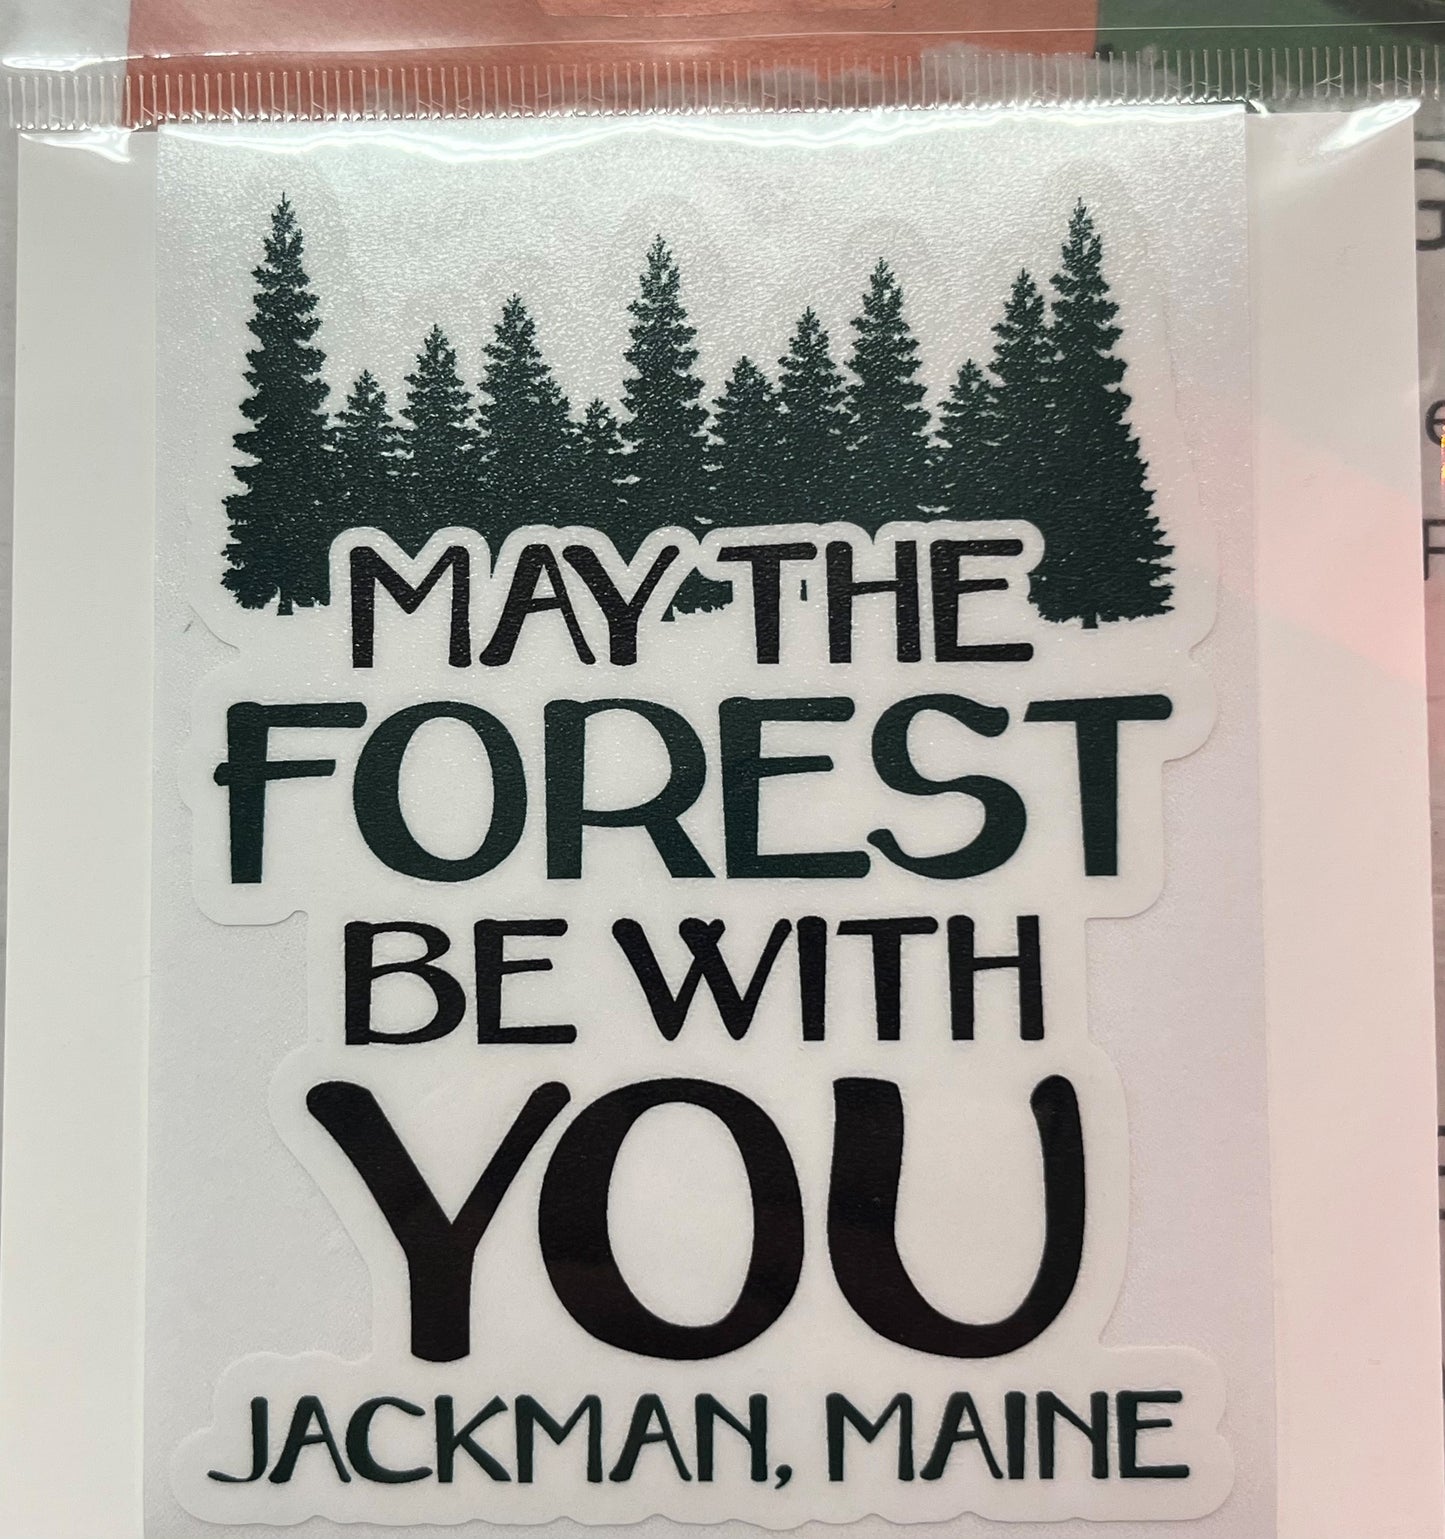 Jackman Maine Stickers